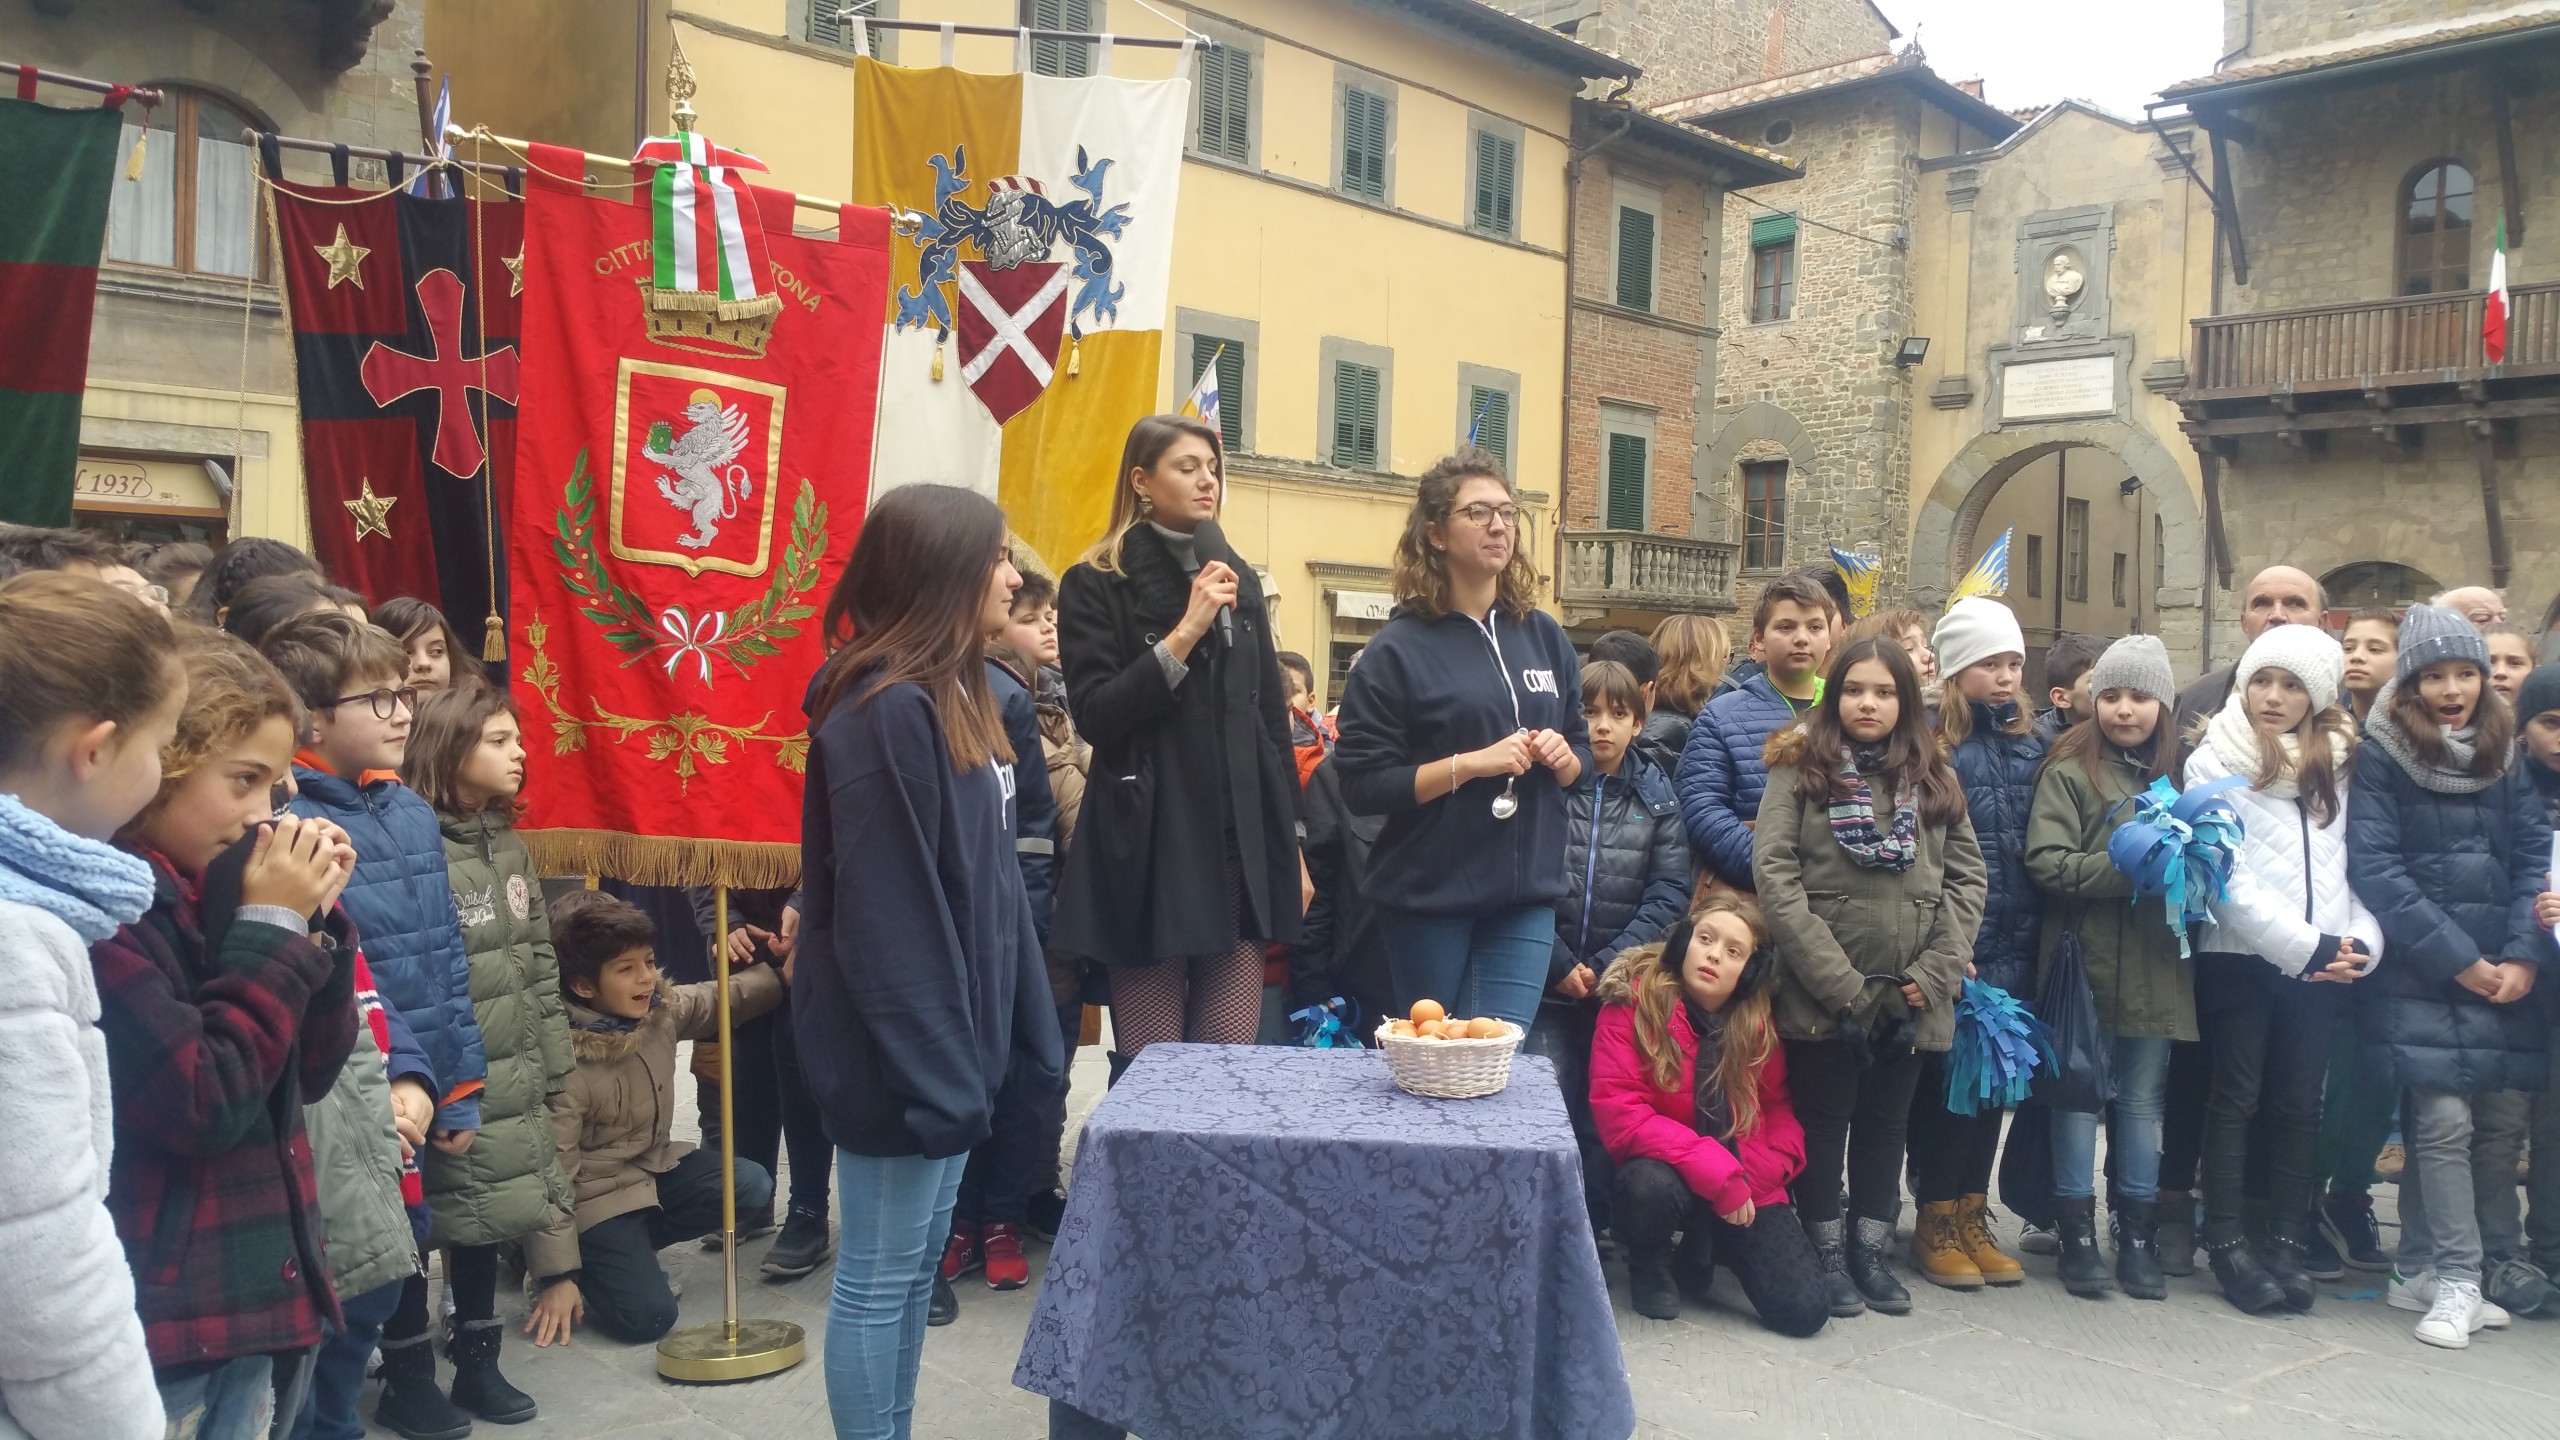 Mezzogiorno in Famiglia a Cortona - Le foto del dietro le quinte